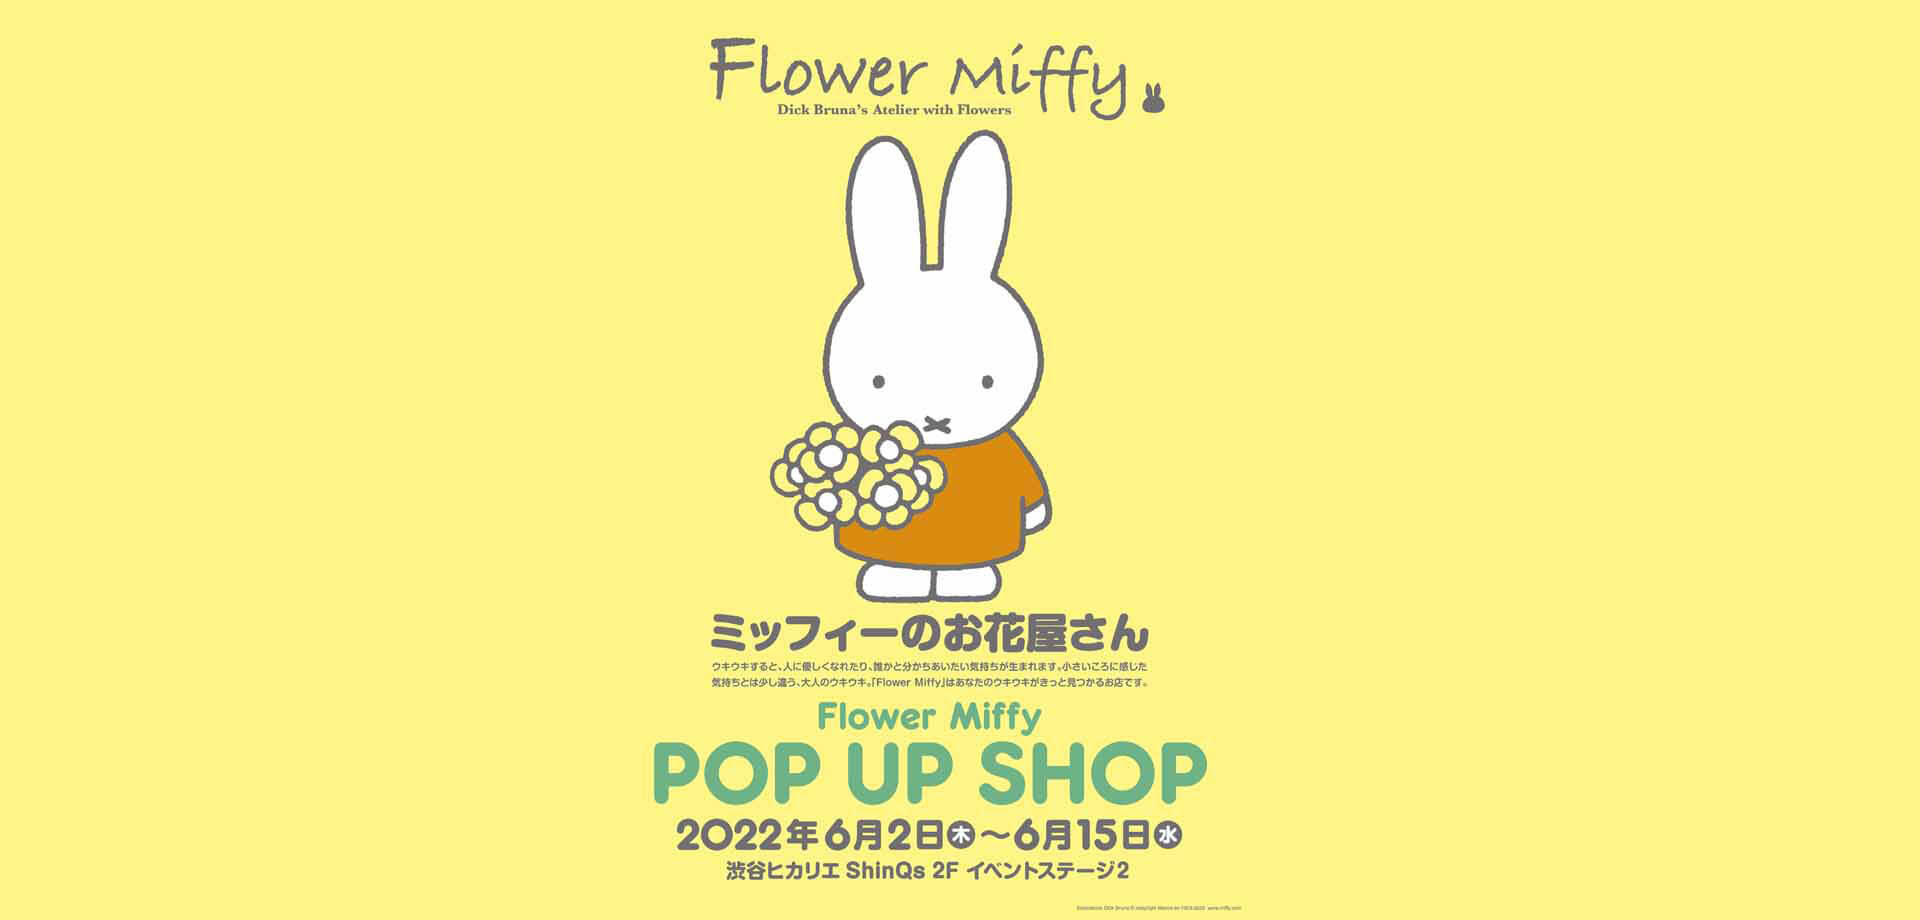 Flower Miffy POP UP SHOP